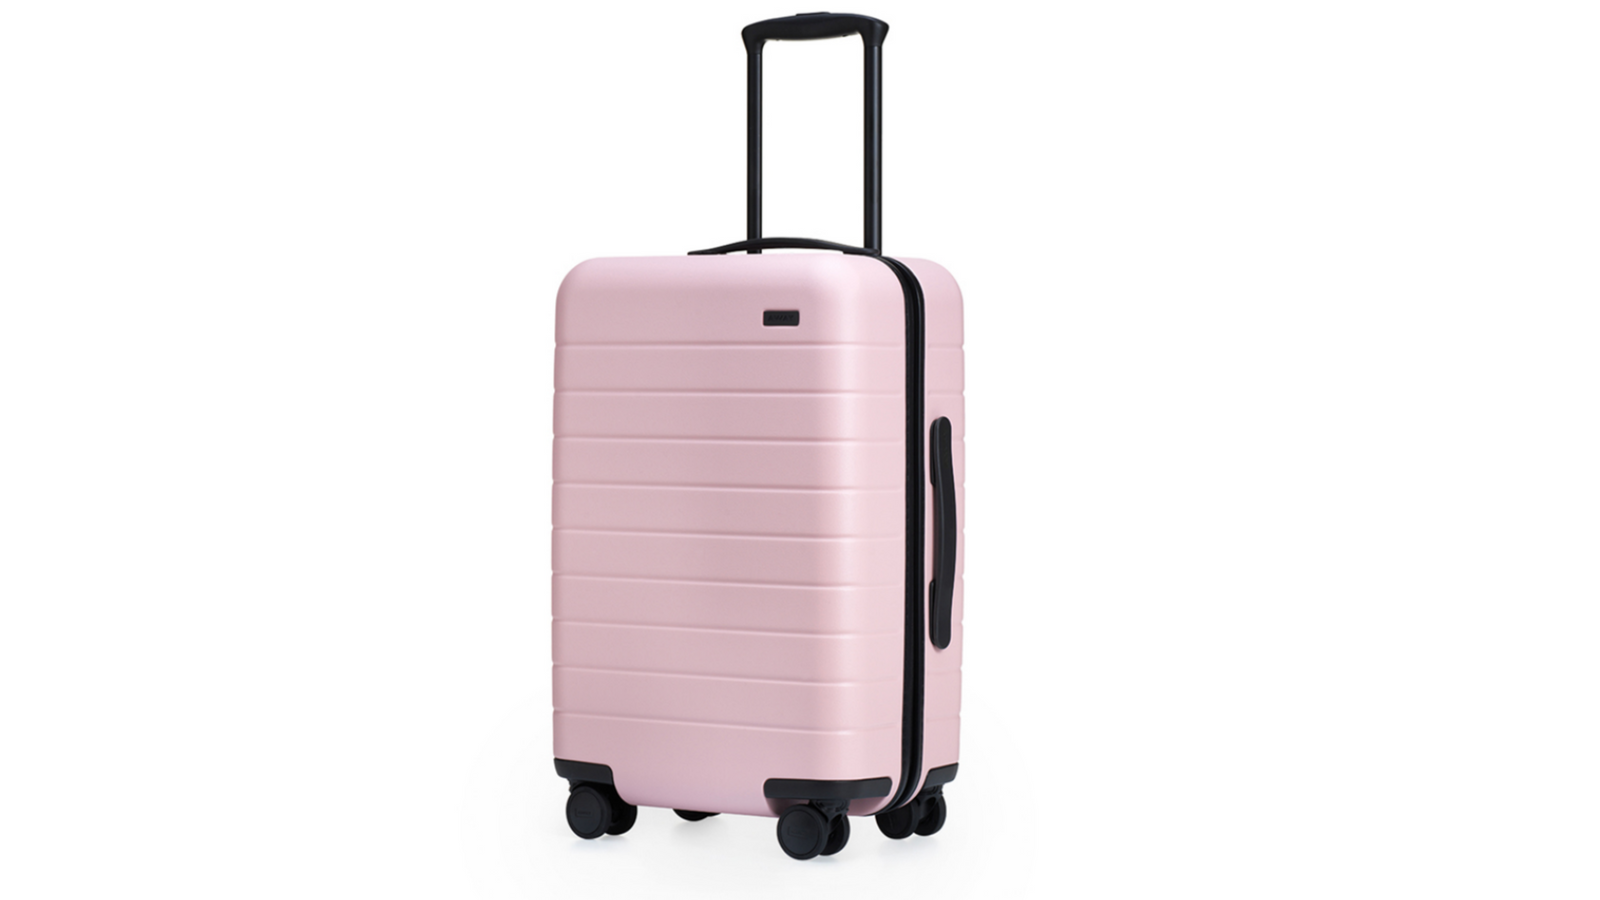 one suitcase hard case luggage